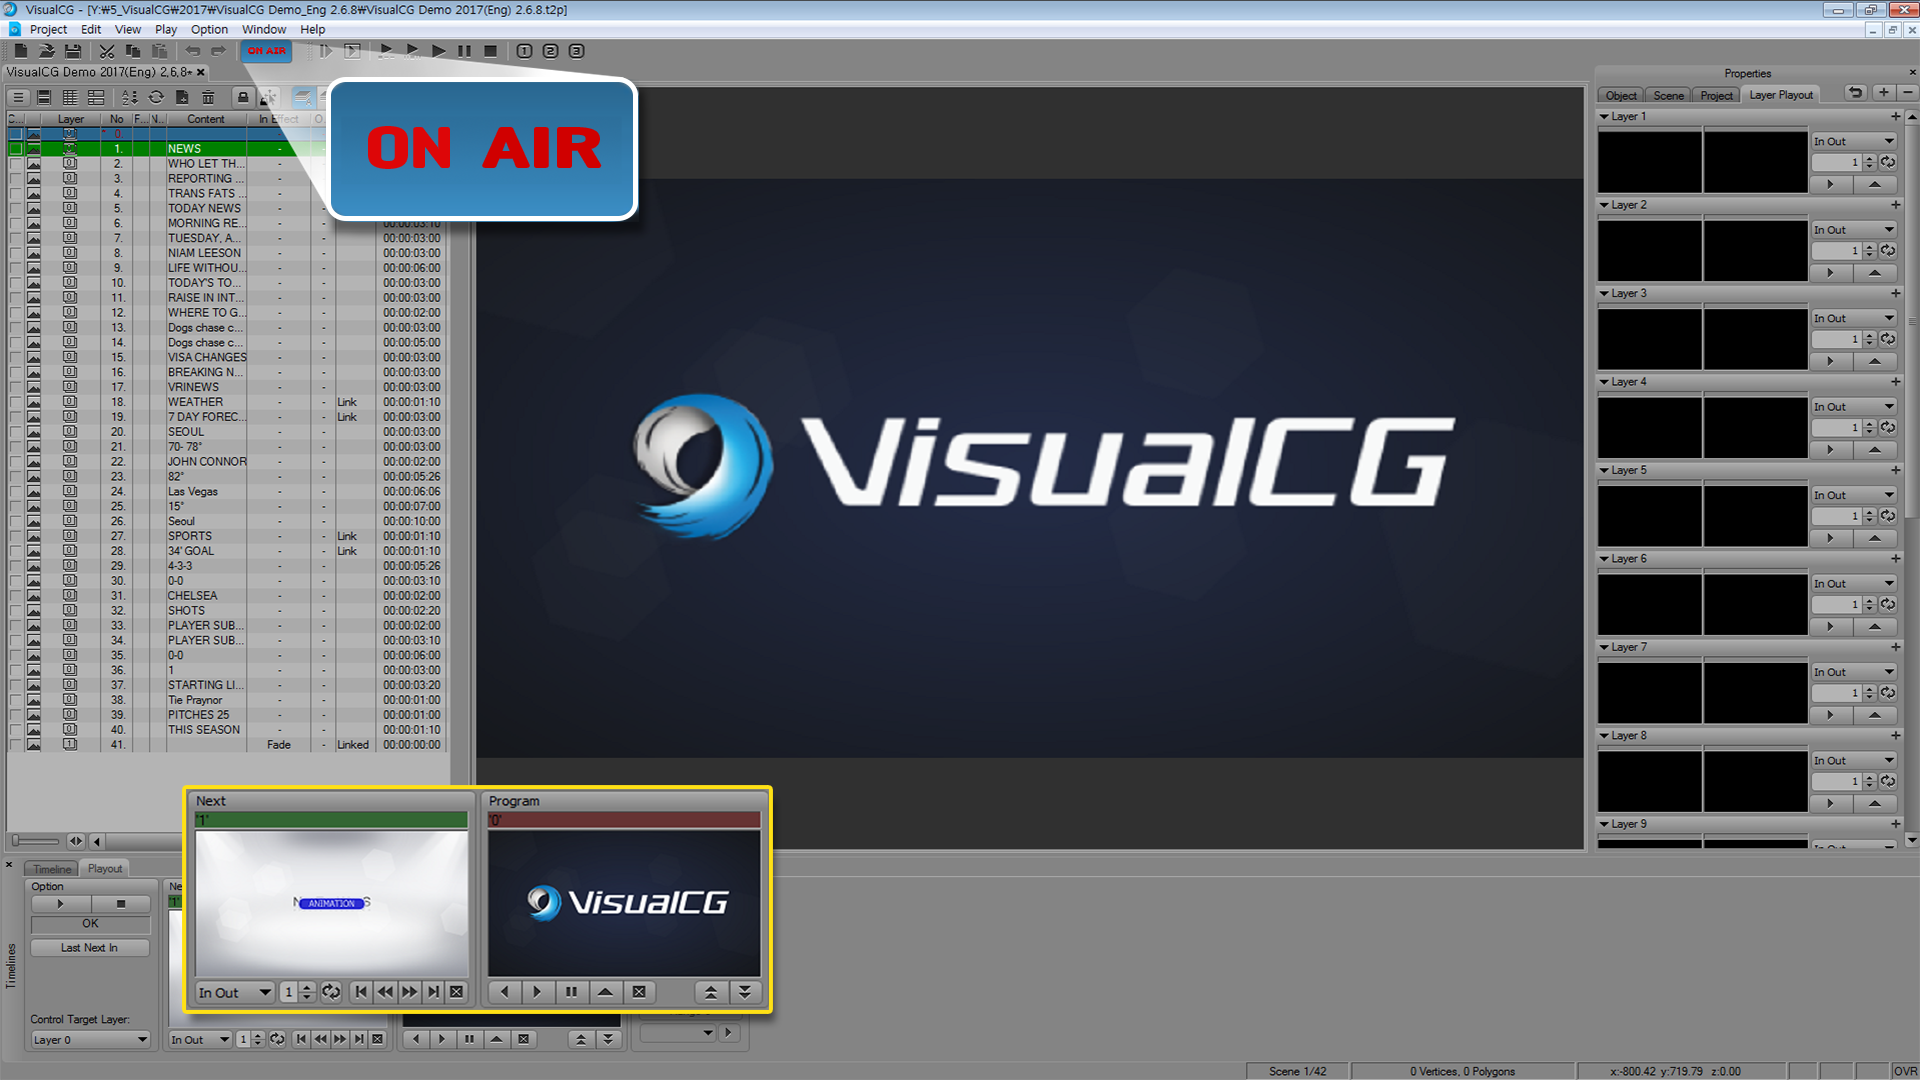 Phần mềm đồ họa VisualCG